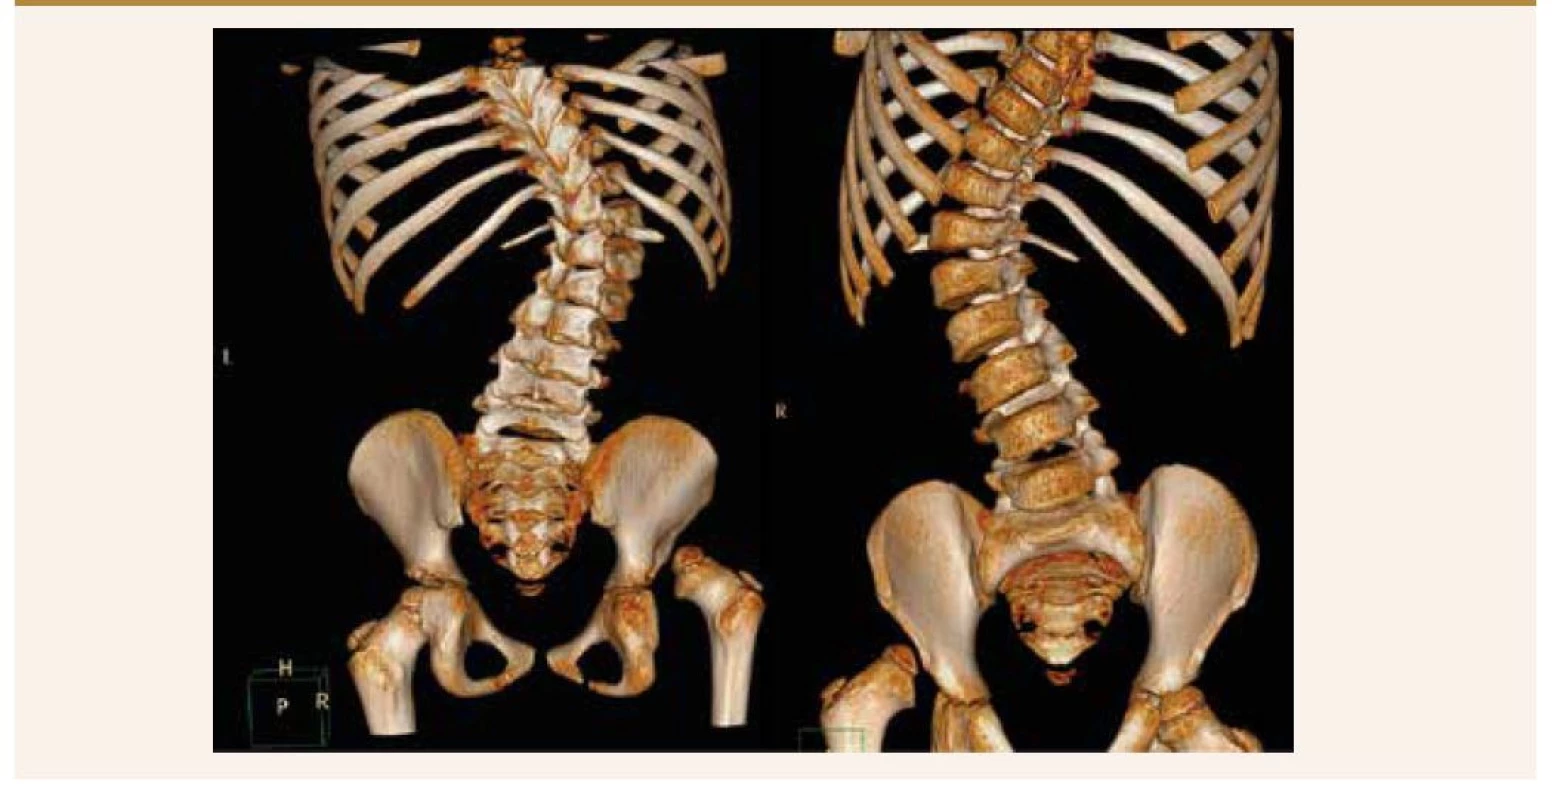 CT-vyšetrenie bedrových kĺbov a torakolumbálnej chrbtice s 3D-rekonštrukciou.